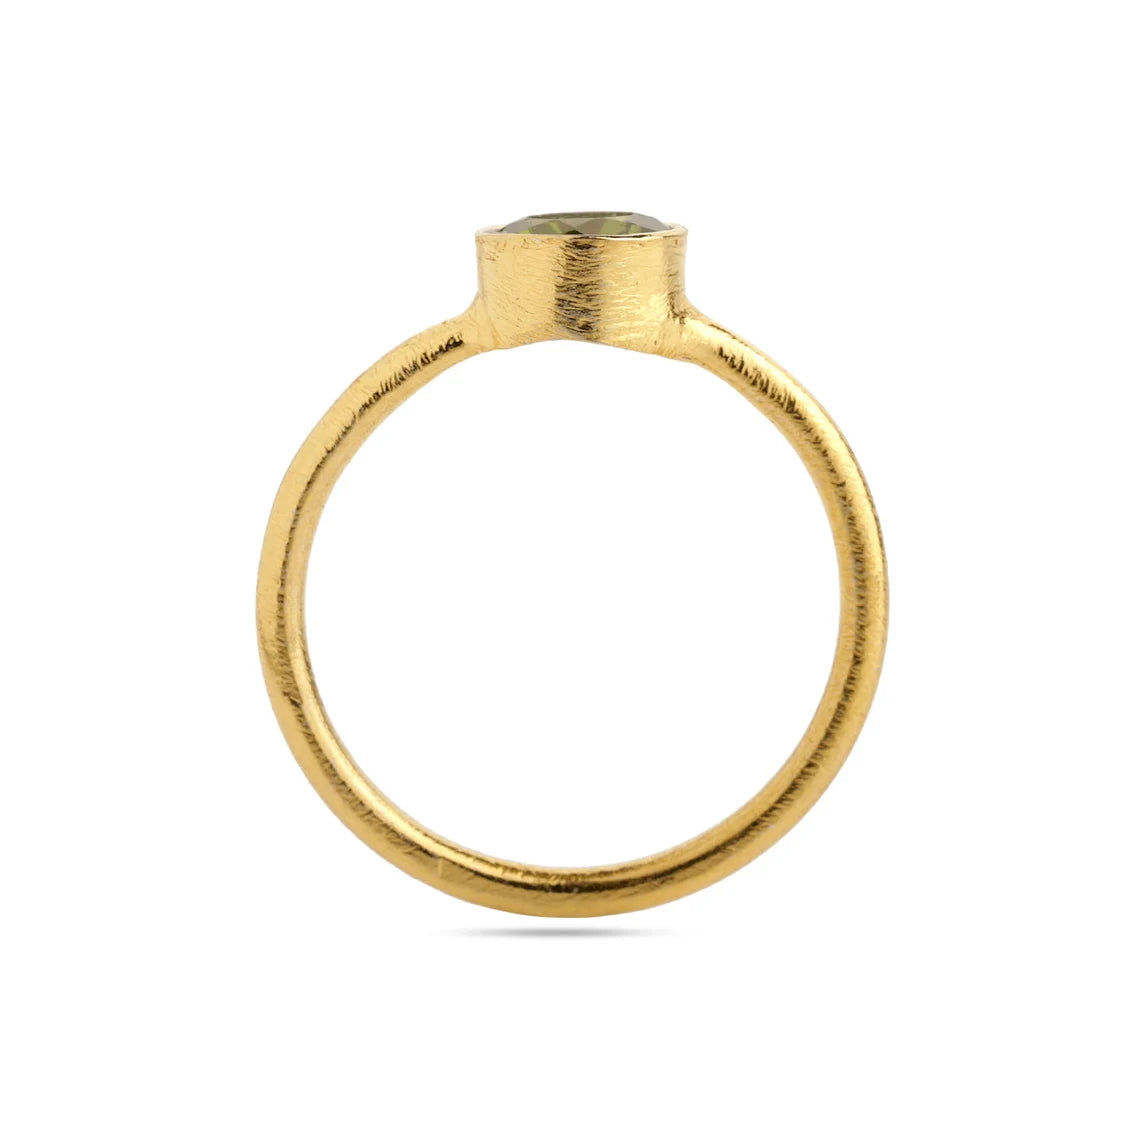 Round Peridot Ring, 925 Sterling Silver Natural Peridot Gemstone Ring